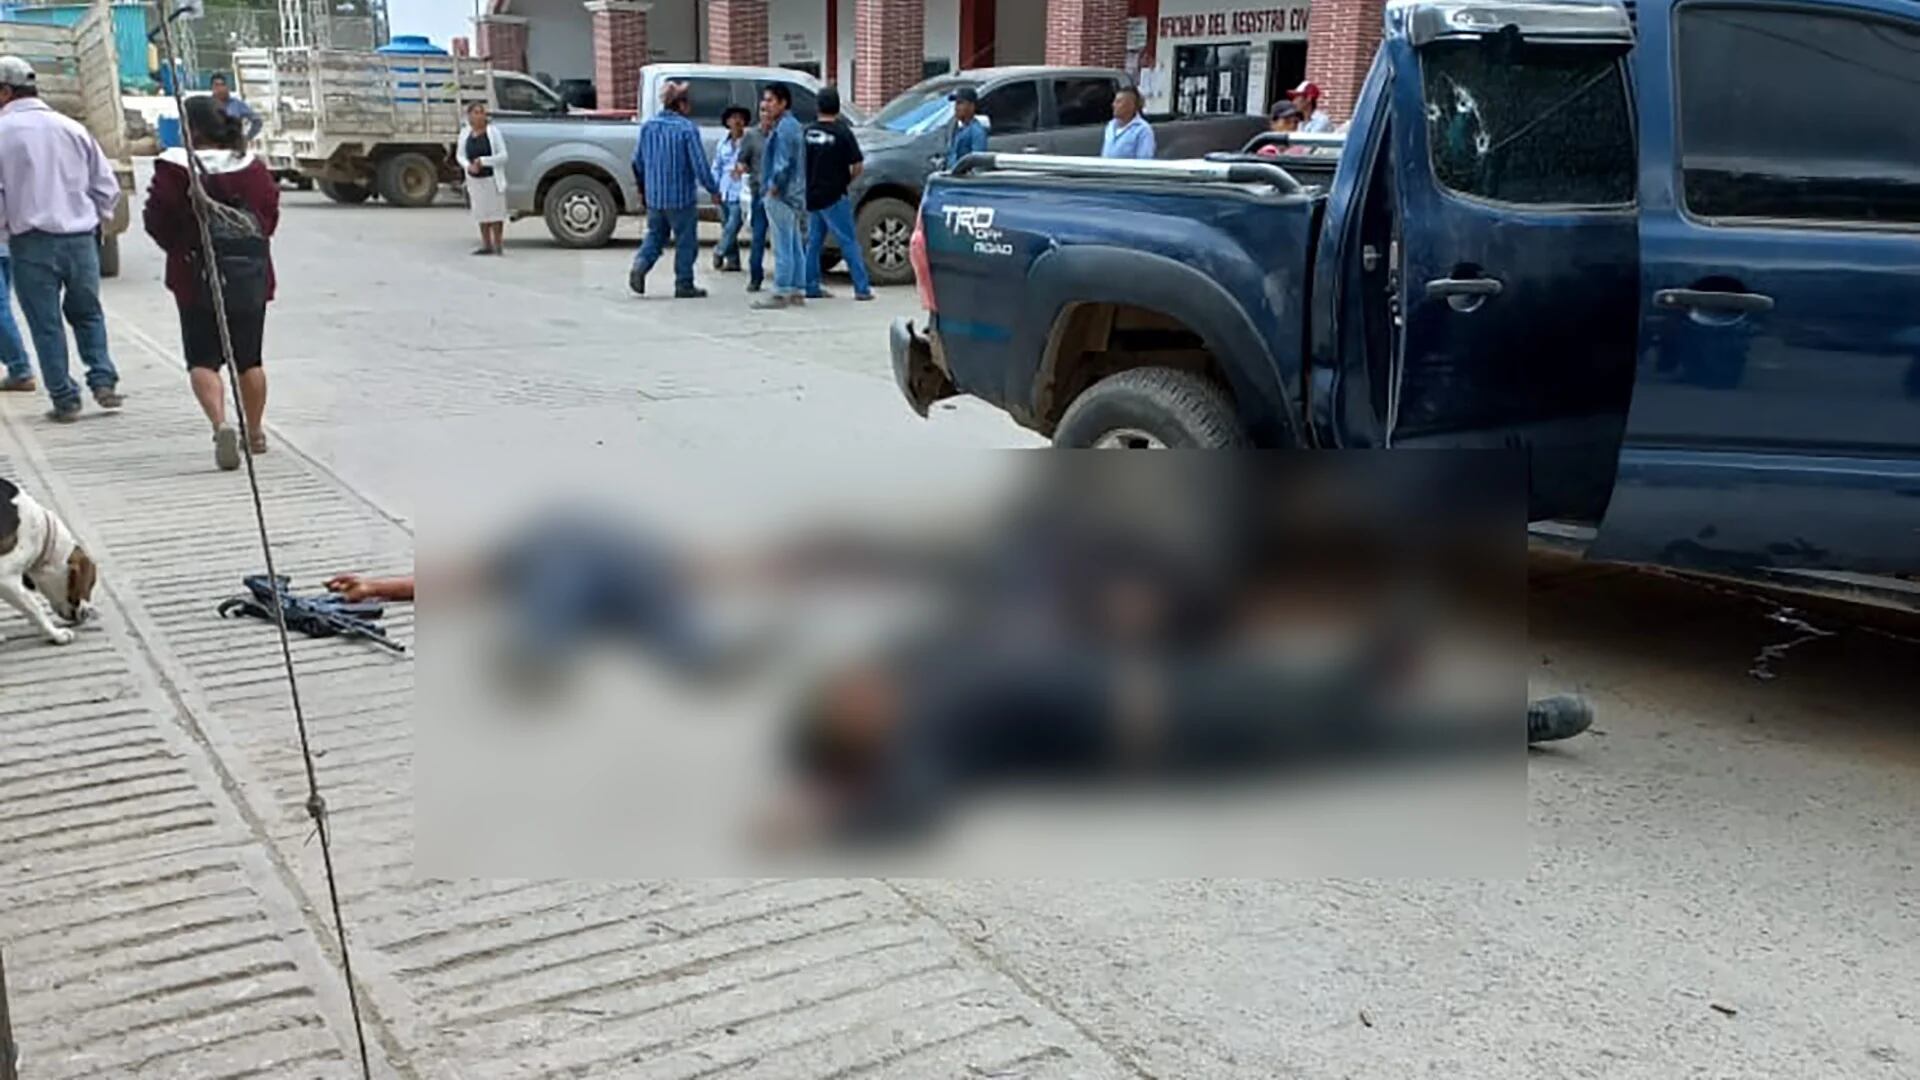 Enfrentamiento armado en Santiago Amoltepec, Oaxaca dejó un saldo de al menos 5 muertos